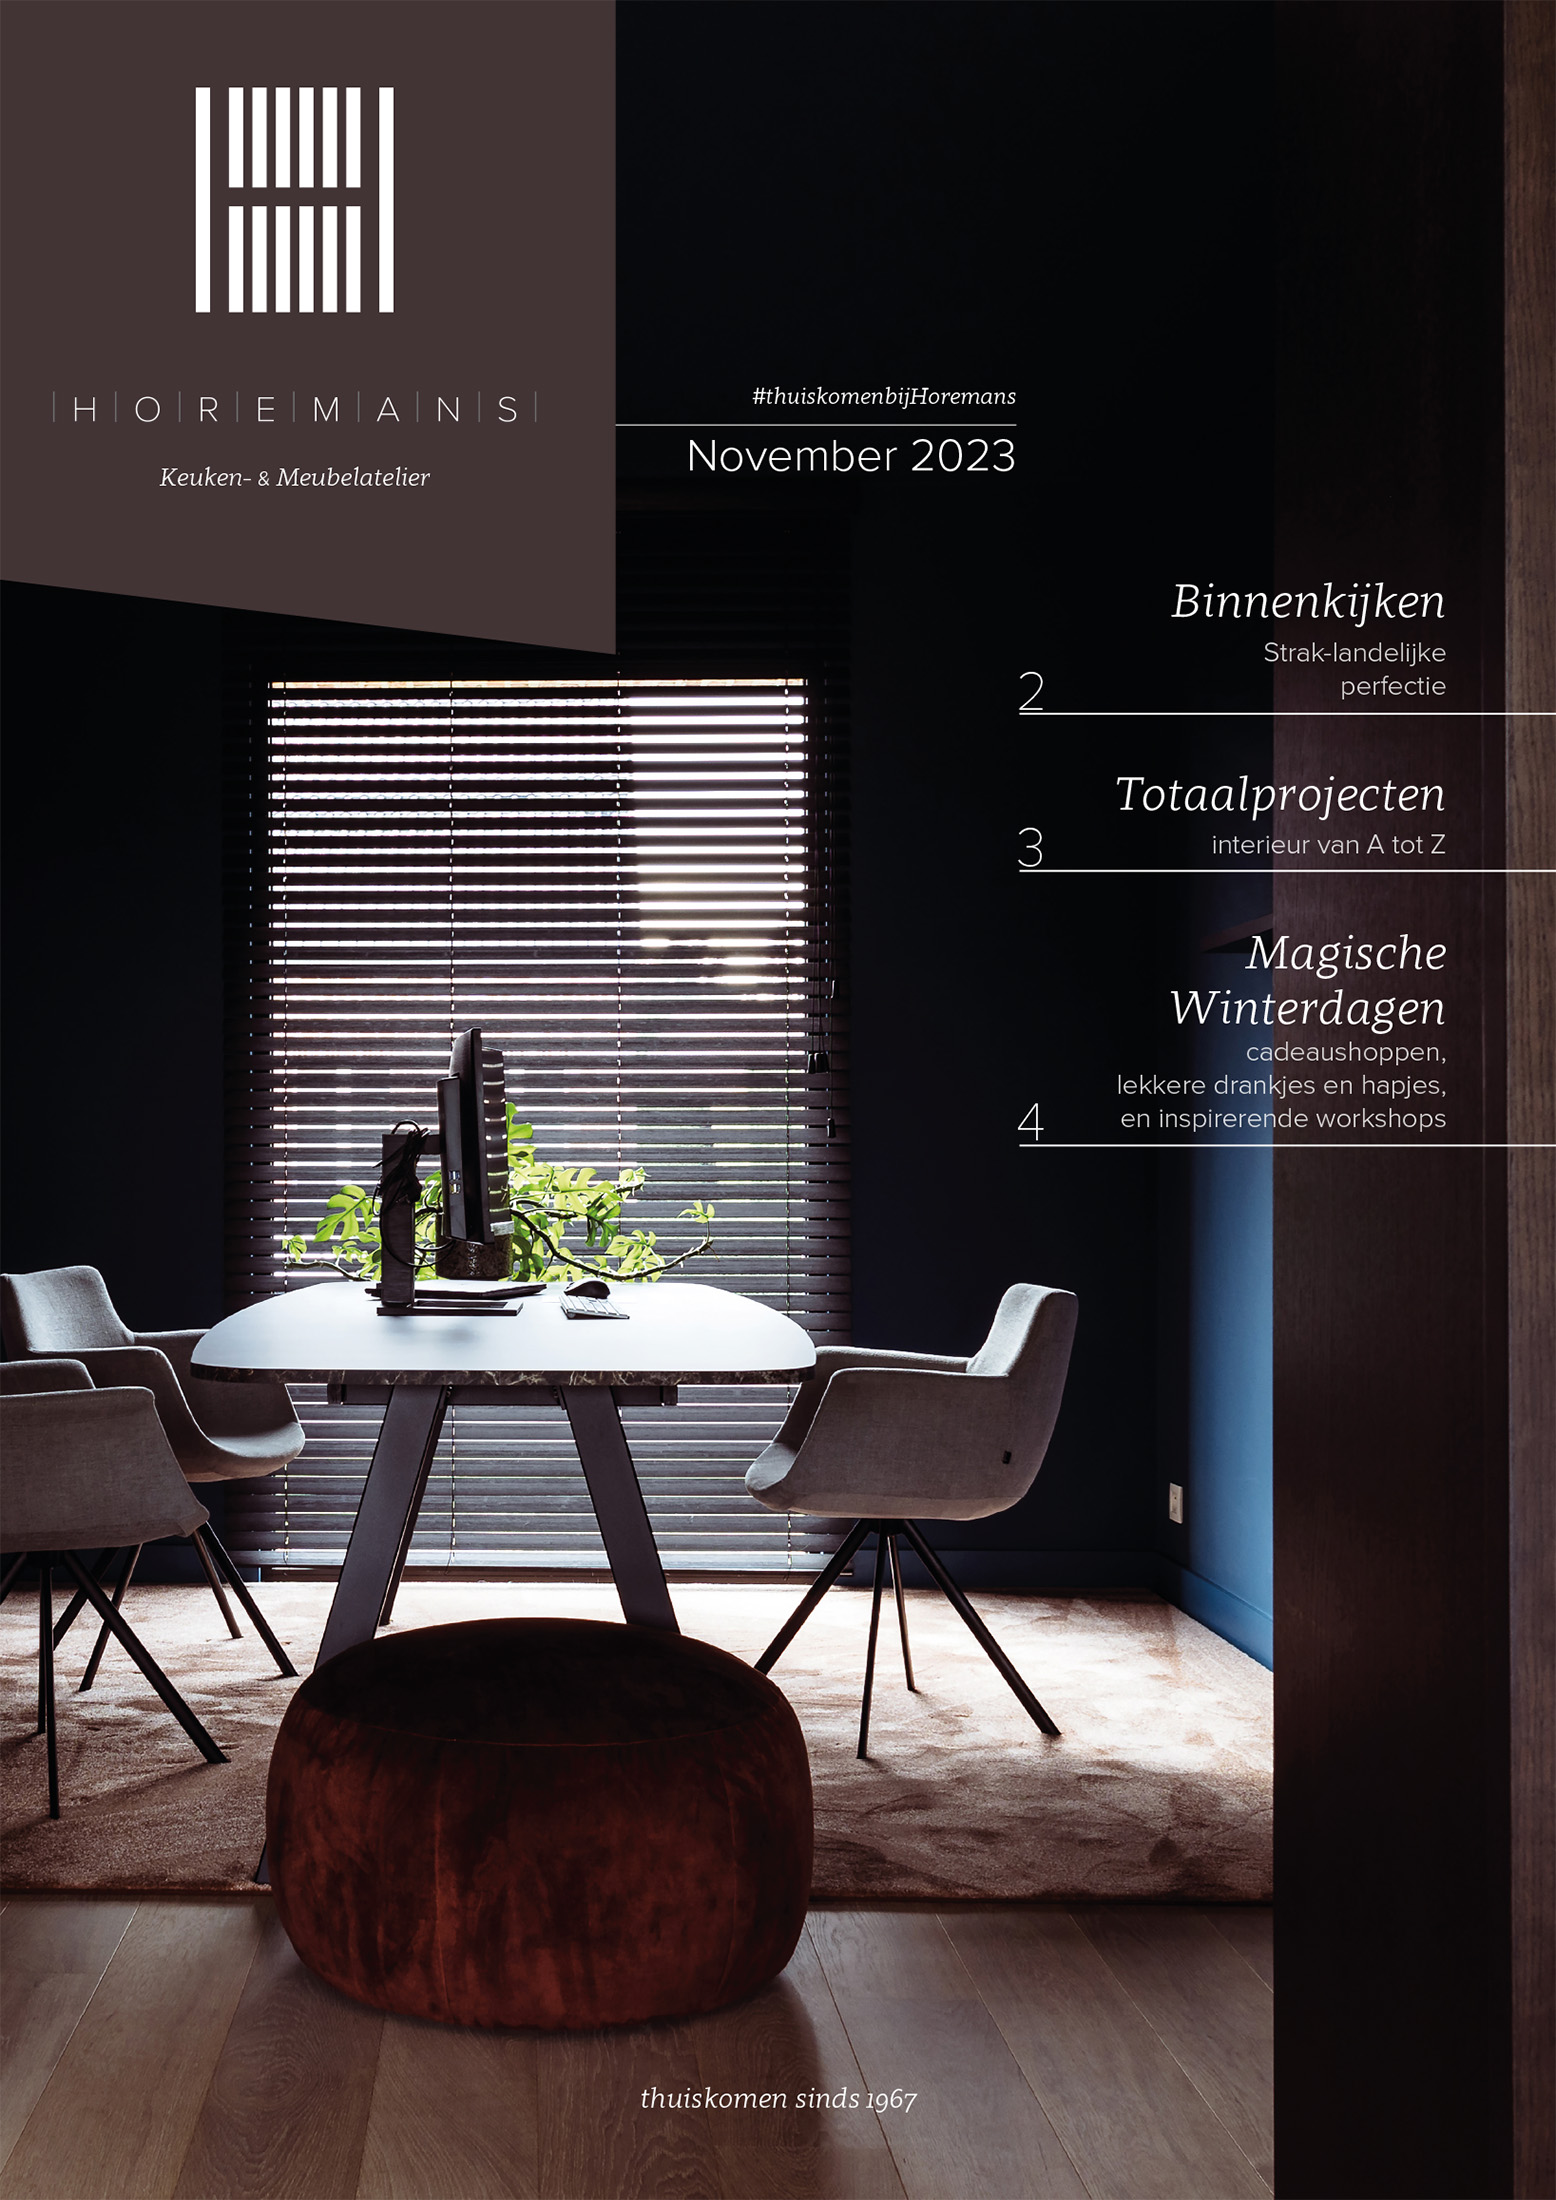 Horemans krant - Realisaties in beeld met interieurfotografie